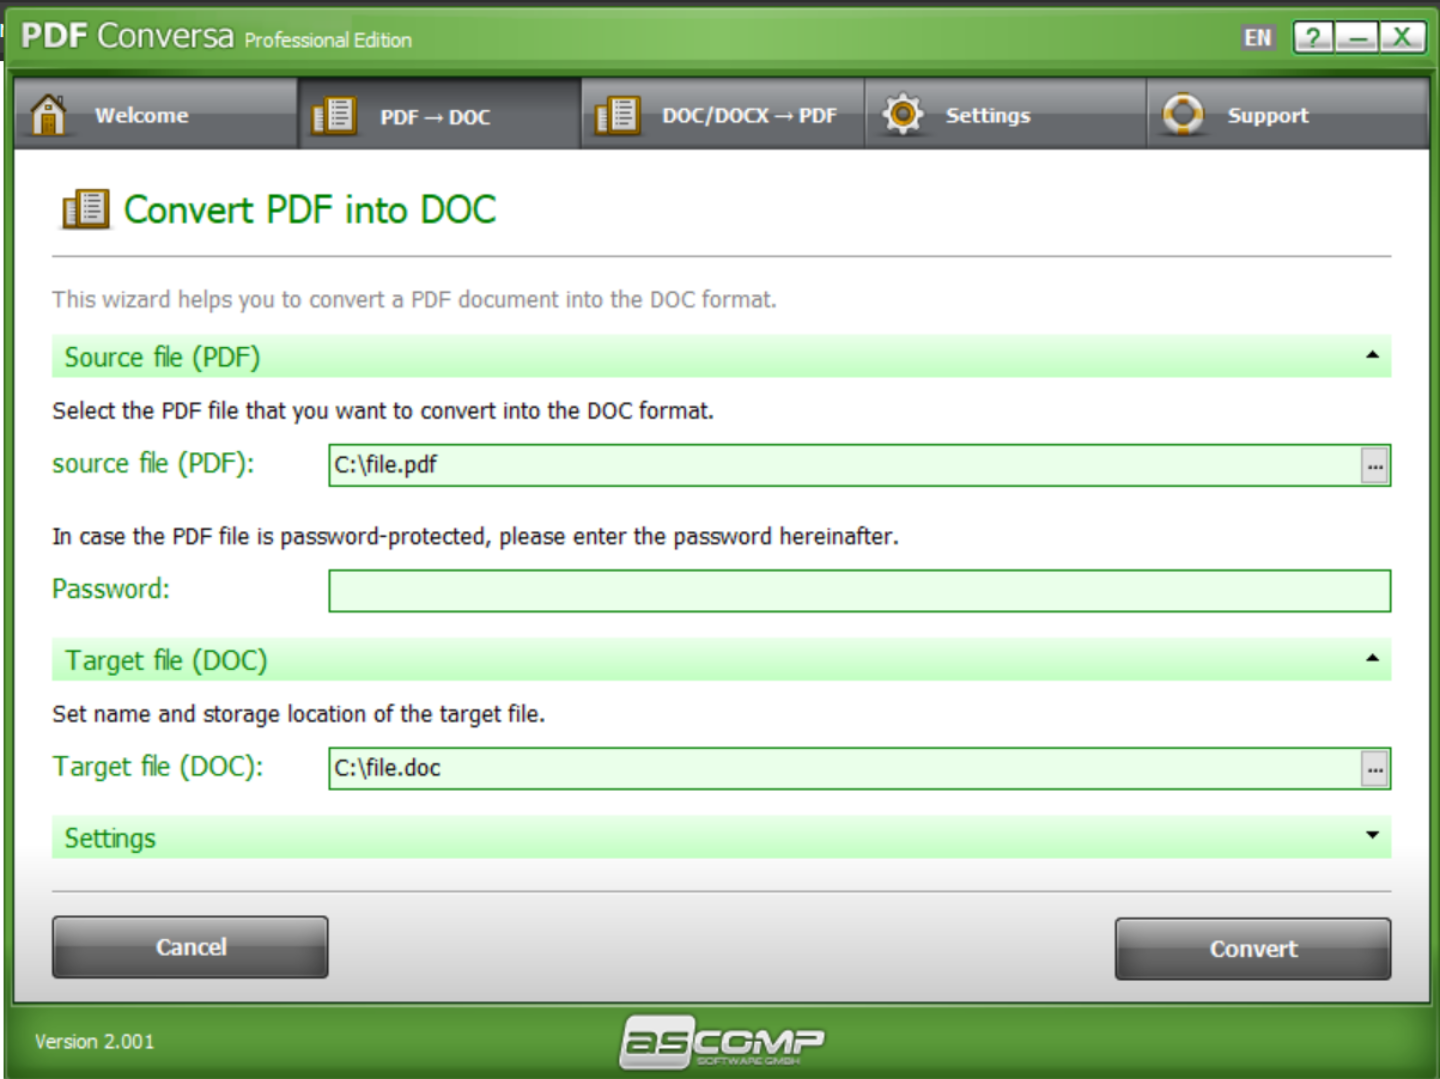 限時免費！PDF、Word 檔案轉換軟體『 PDF Conversa 專業版 』！PDF 檔轉換成可編輯的 Word 檔超方便！